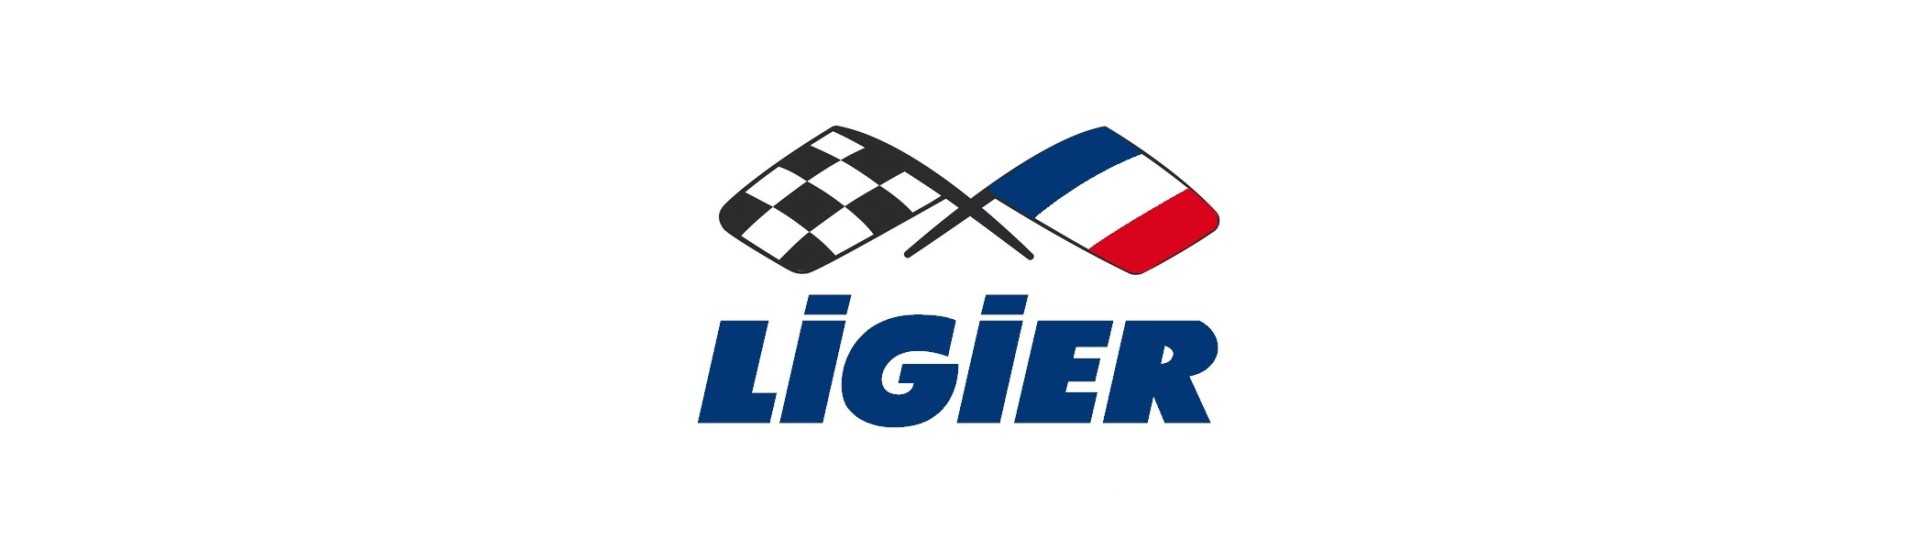 Cardan au meilleur prix pour voiture sans permis Ligier